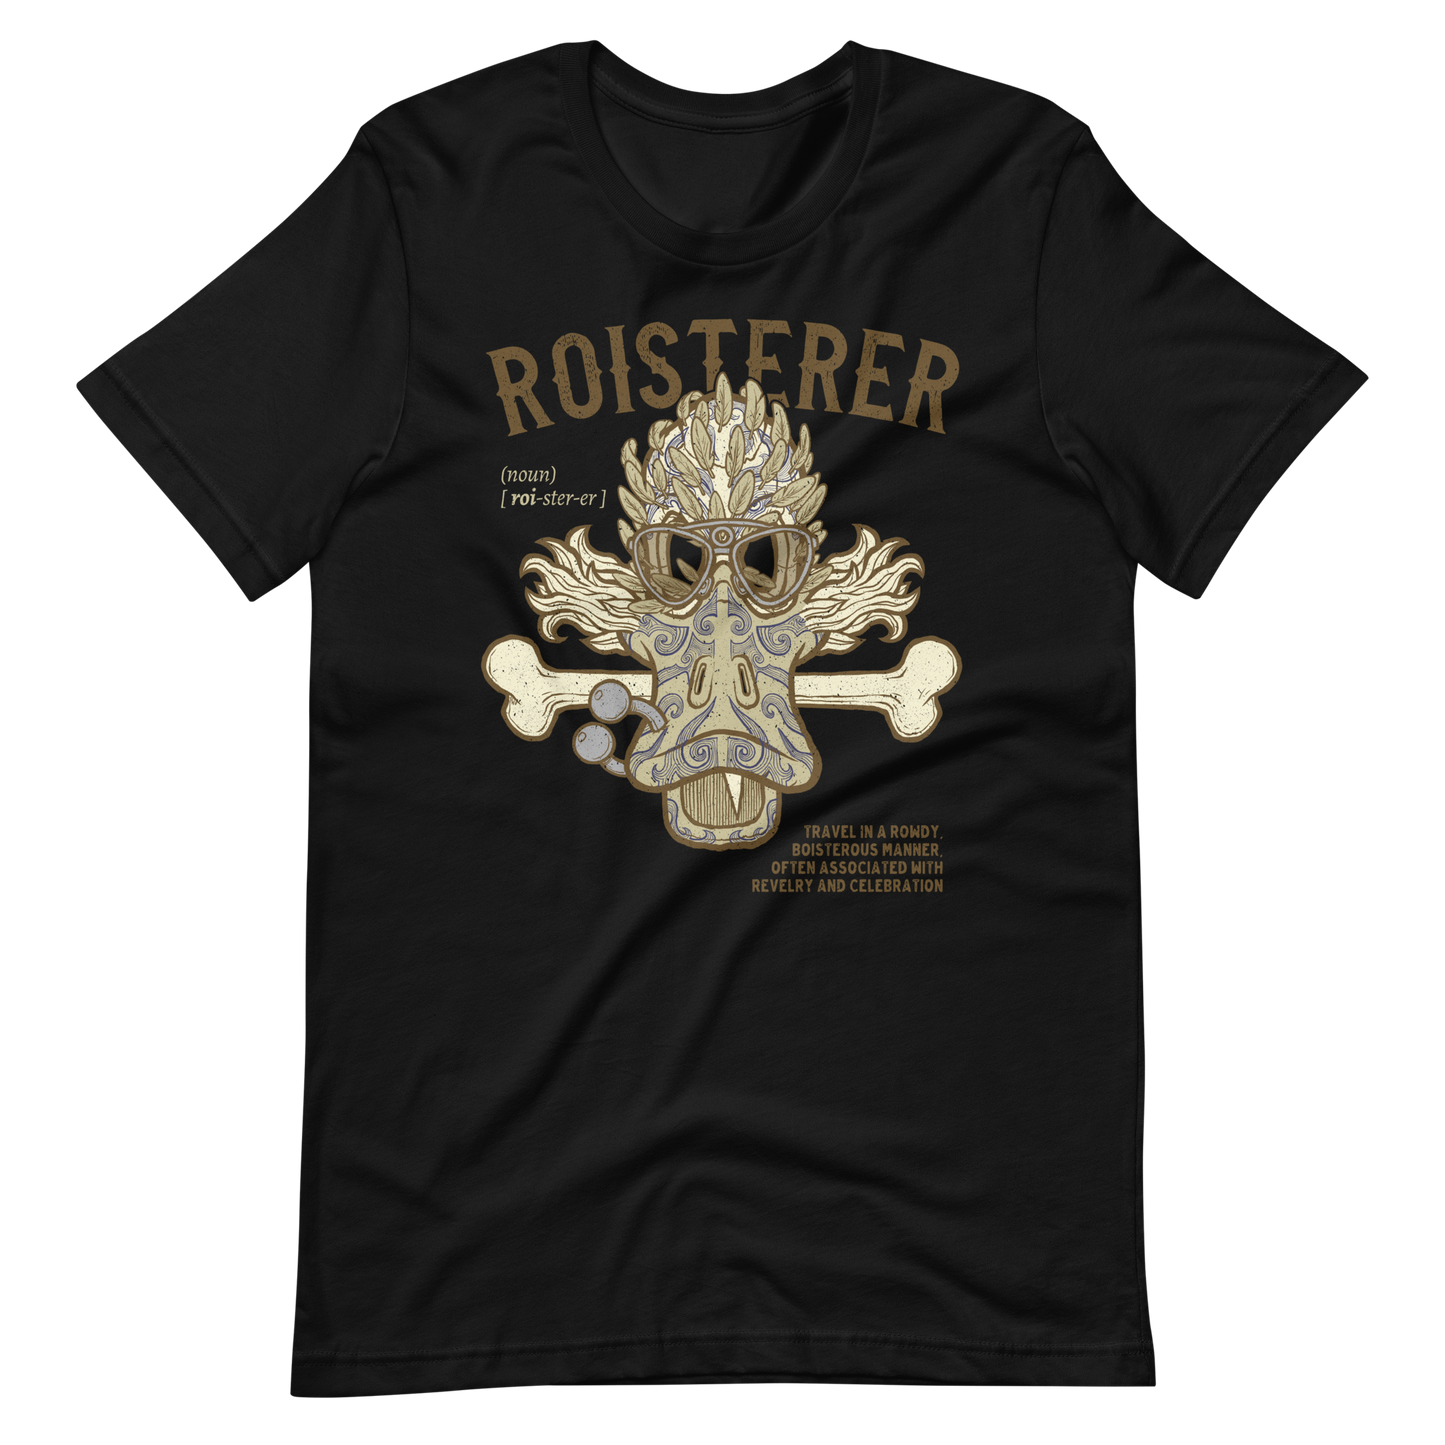 Black Roister Motorcycle T-shirt Cerlebration Biker Shirt Tourer Travel Shirt Gift For Biker Traveling Gear Motorcycle Road Trip Shirt Biker Gear